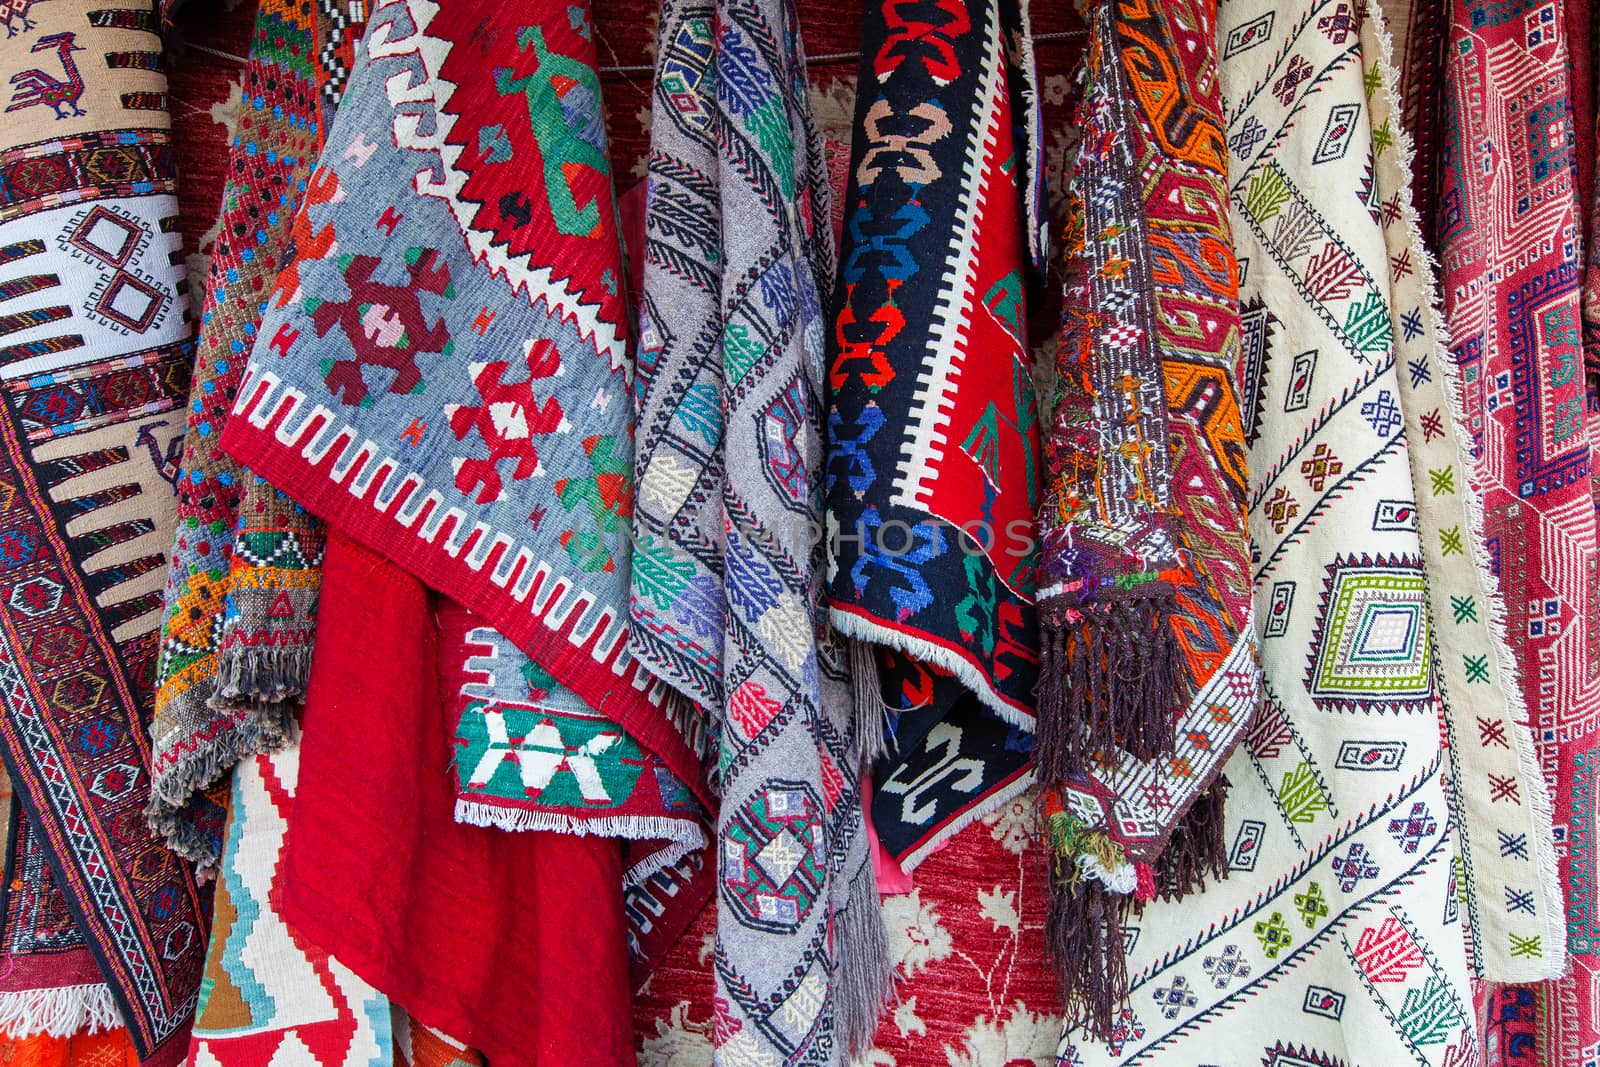 Oriental carpets in street market by igor_stramyk